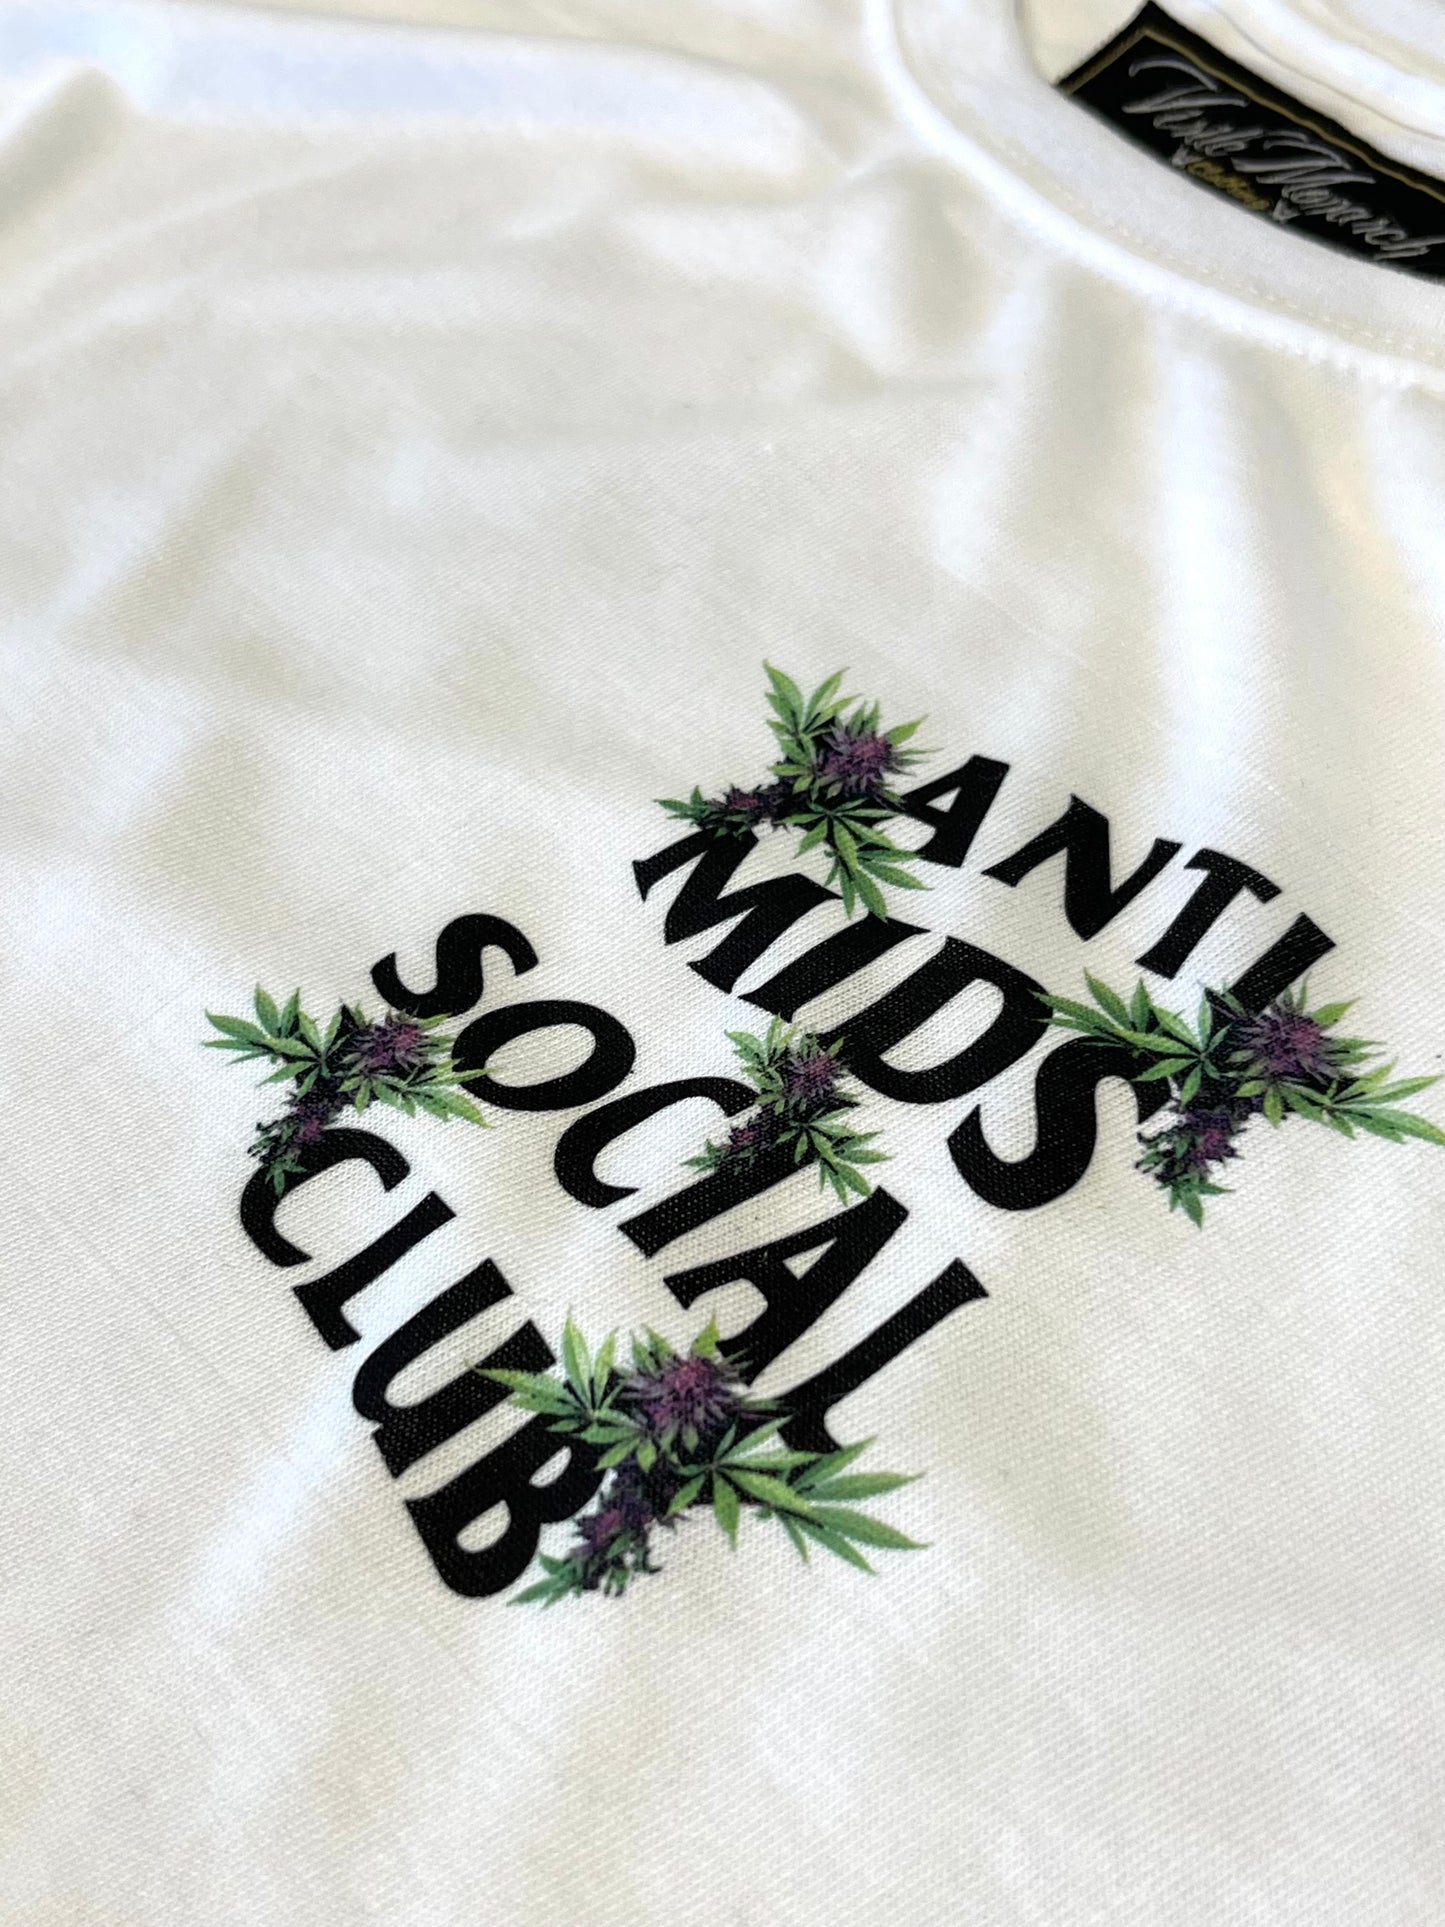 Anti Mids Social Club Flower White T Shirt